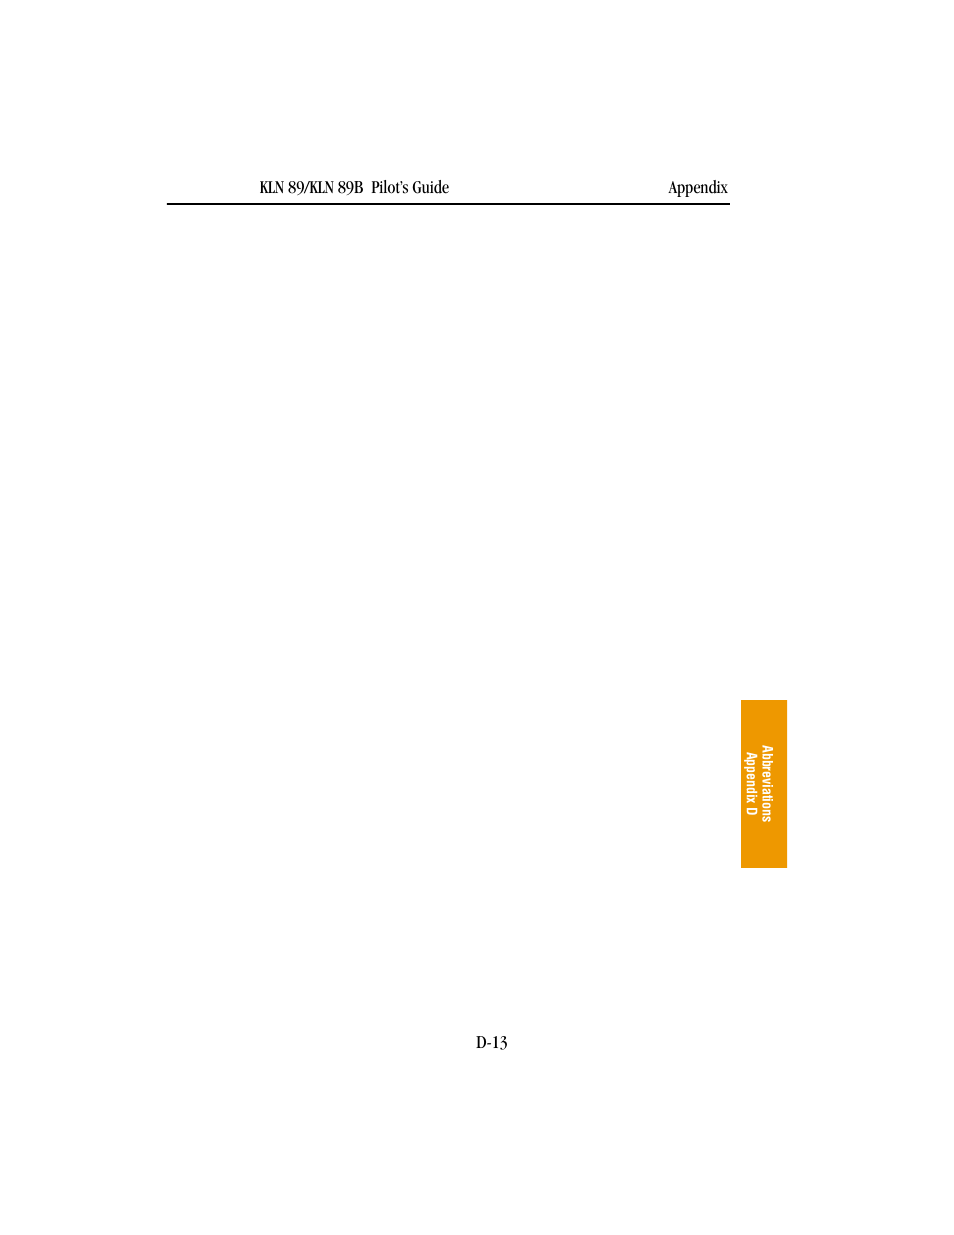 BendixKing KLN 89B - Pilots Guide User Manual | Page 220 / 246